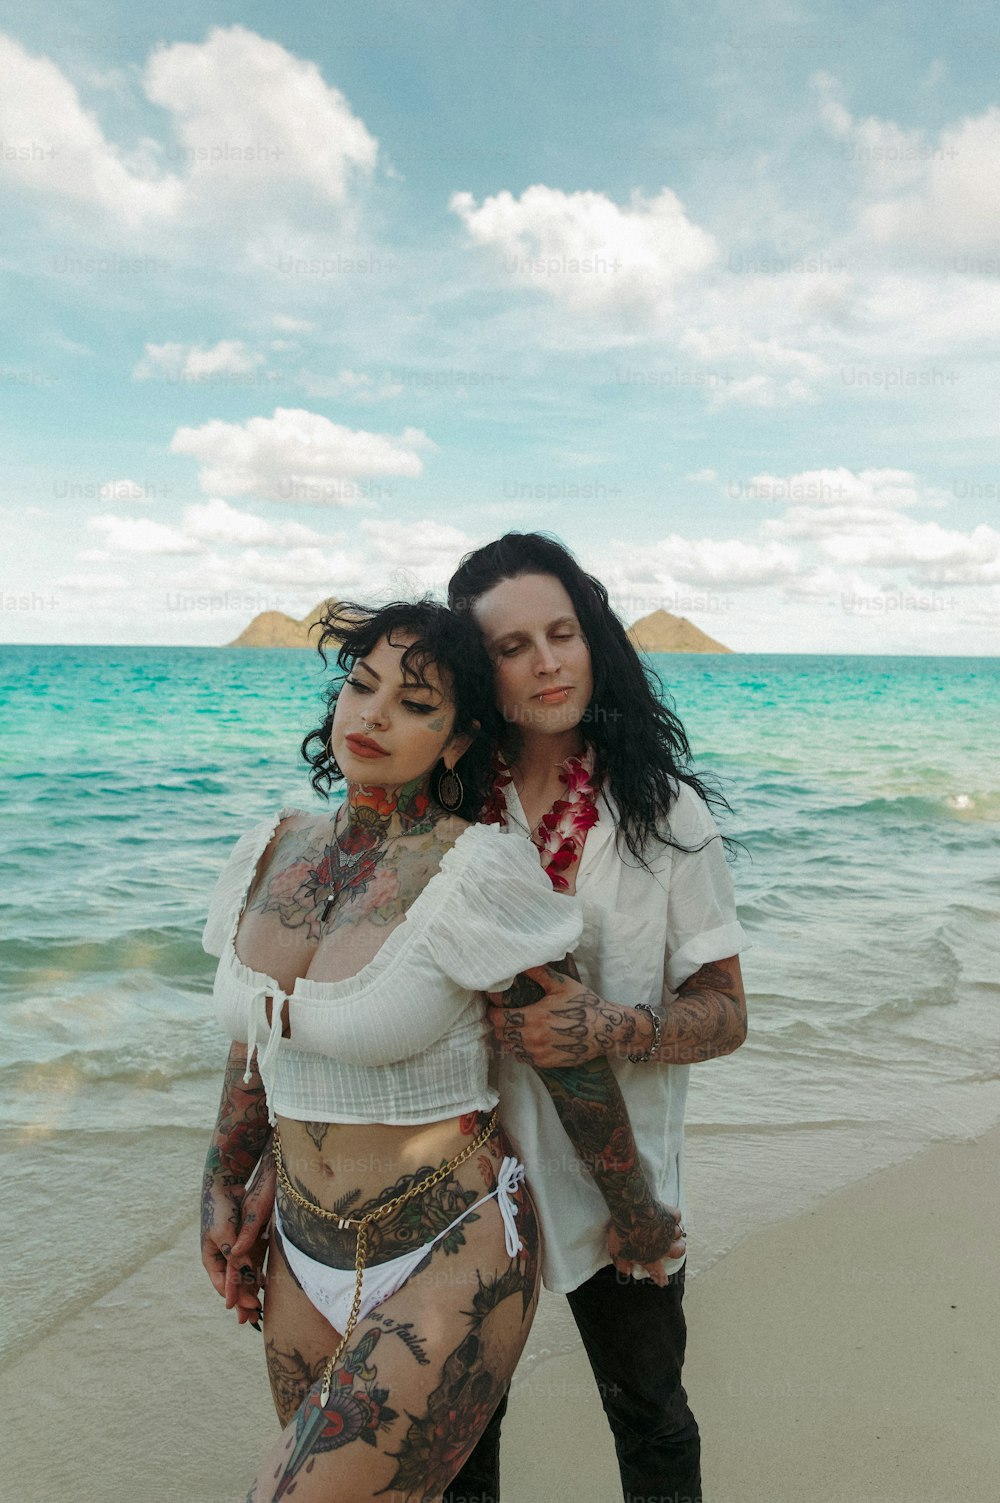 Un couple de femmes debout l’une à côté de l’autre sur une plage